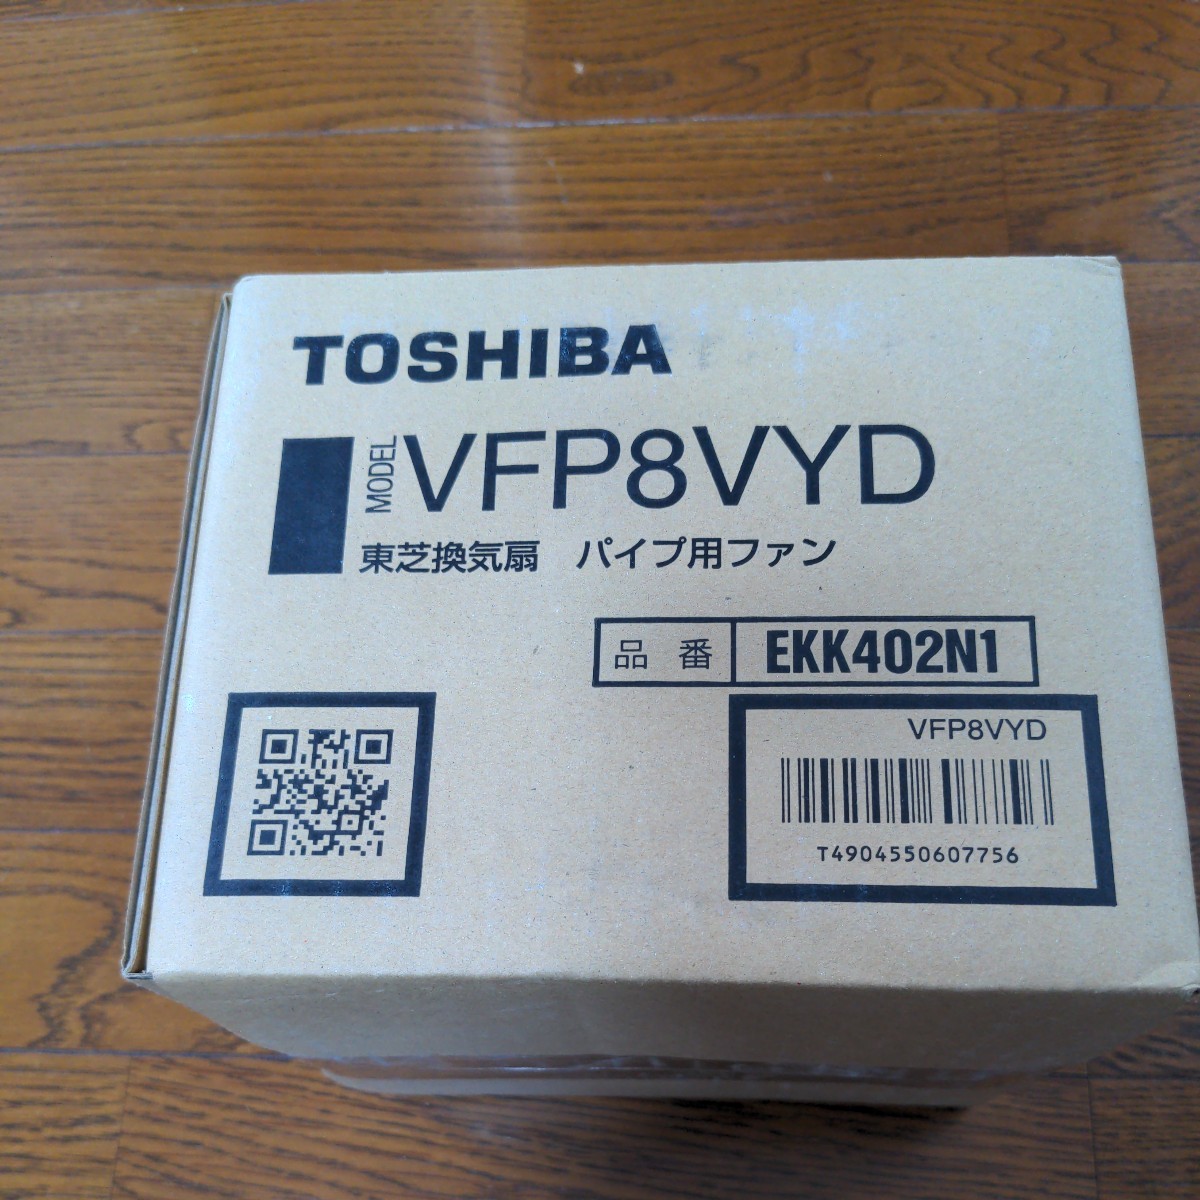  Toshiba exhaust fan pipe for fan 